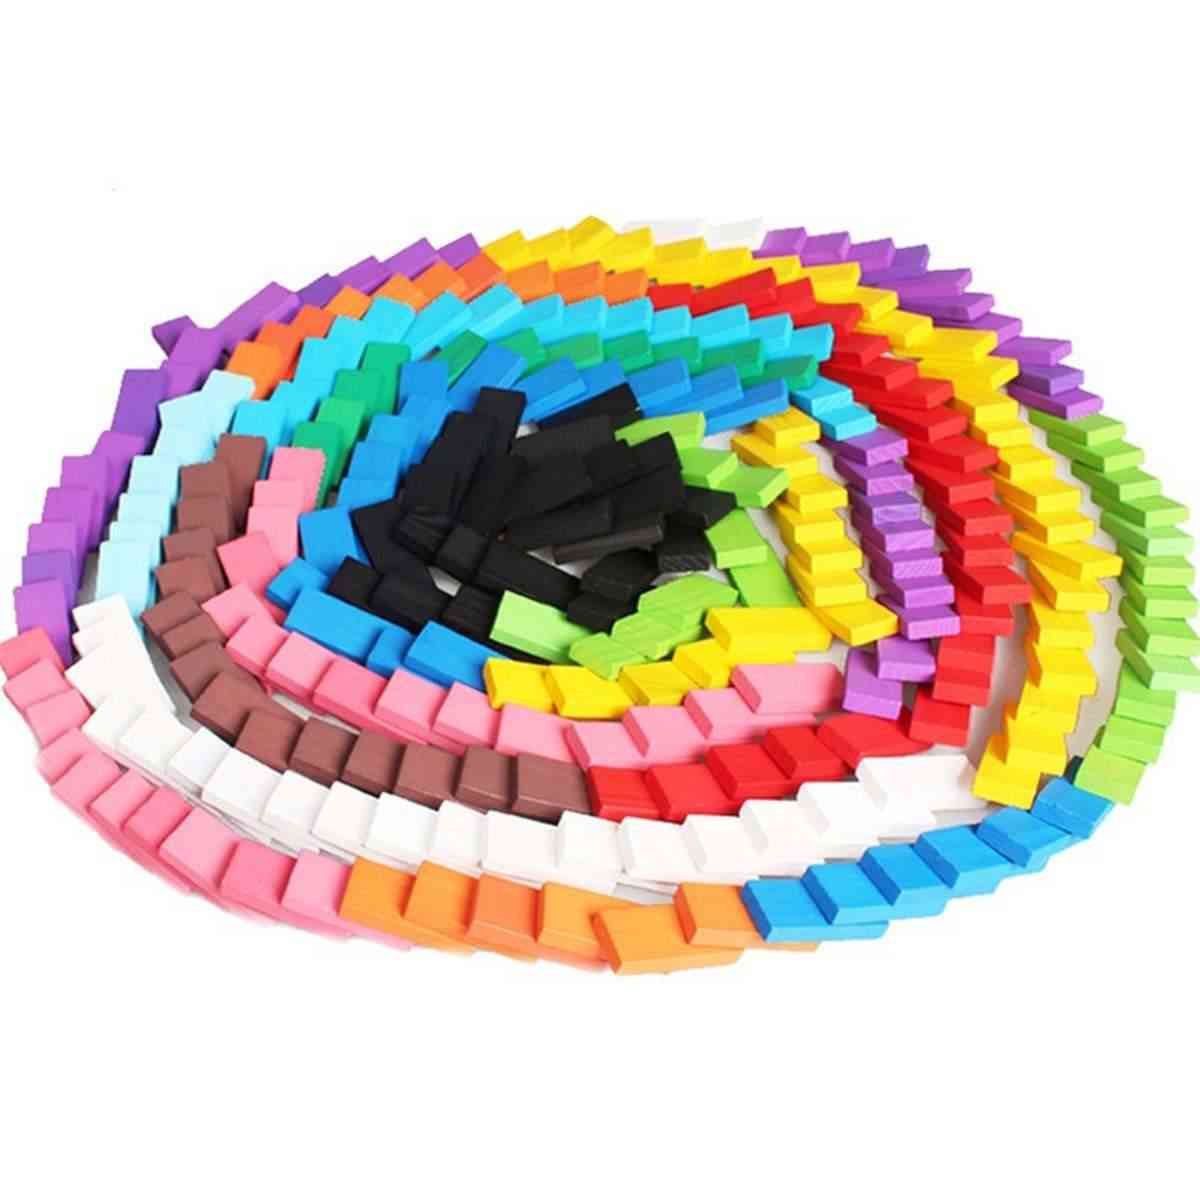 120 sztuk Domino Drewniane zabawki dla dzieci-kolorowe zestawy klocków domino wczesna nauka gry domino, zabawki edukacyjne dla dzieci -